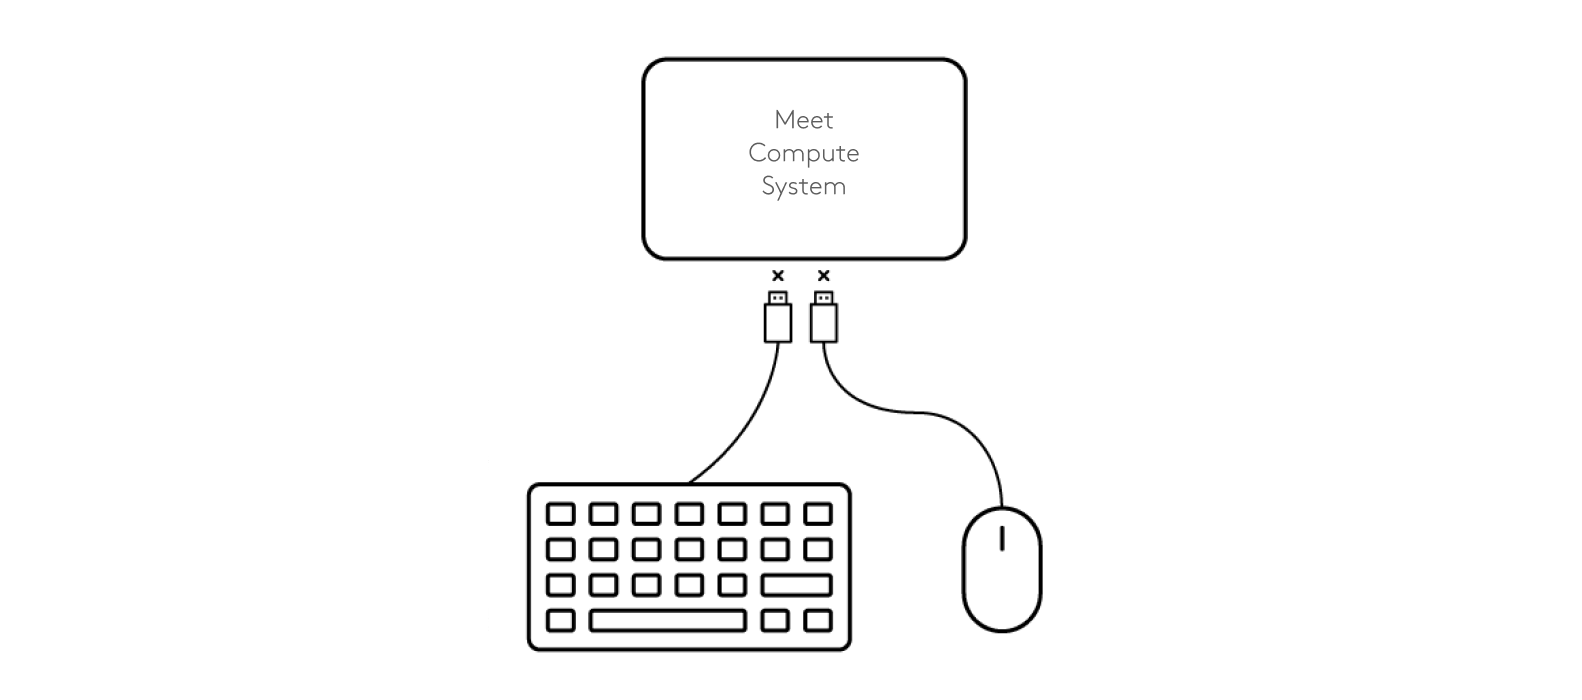 Schemat odłączenia klawiatury i myszy od systemu Meet Compute